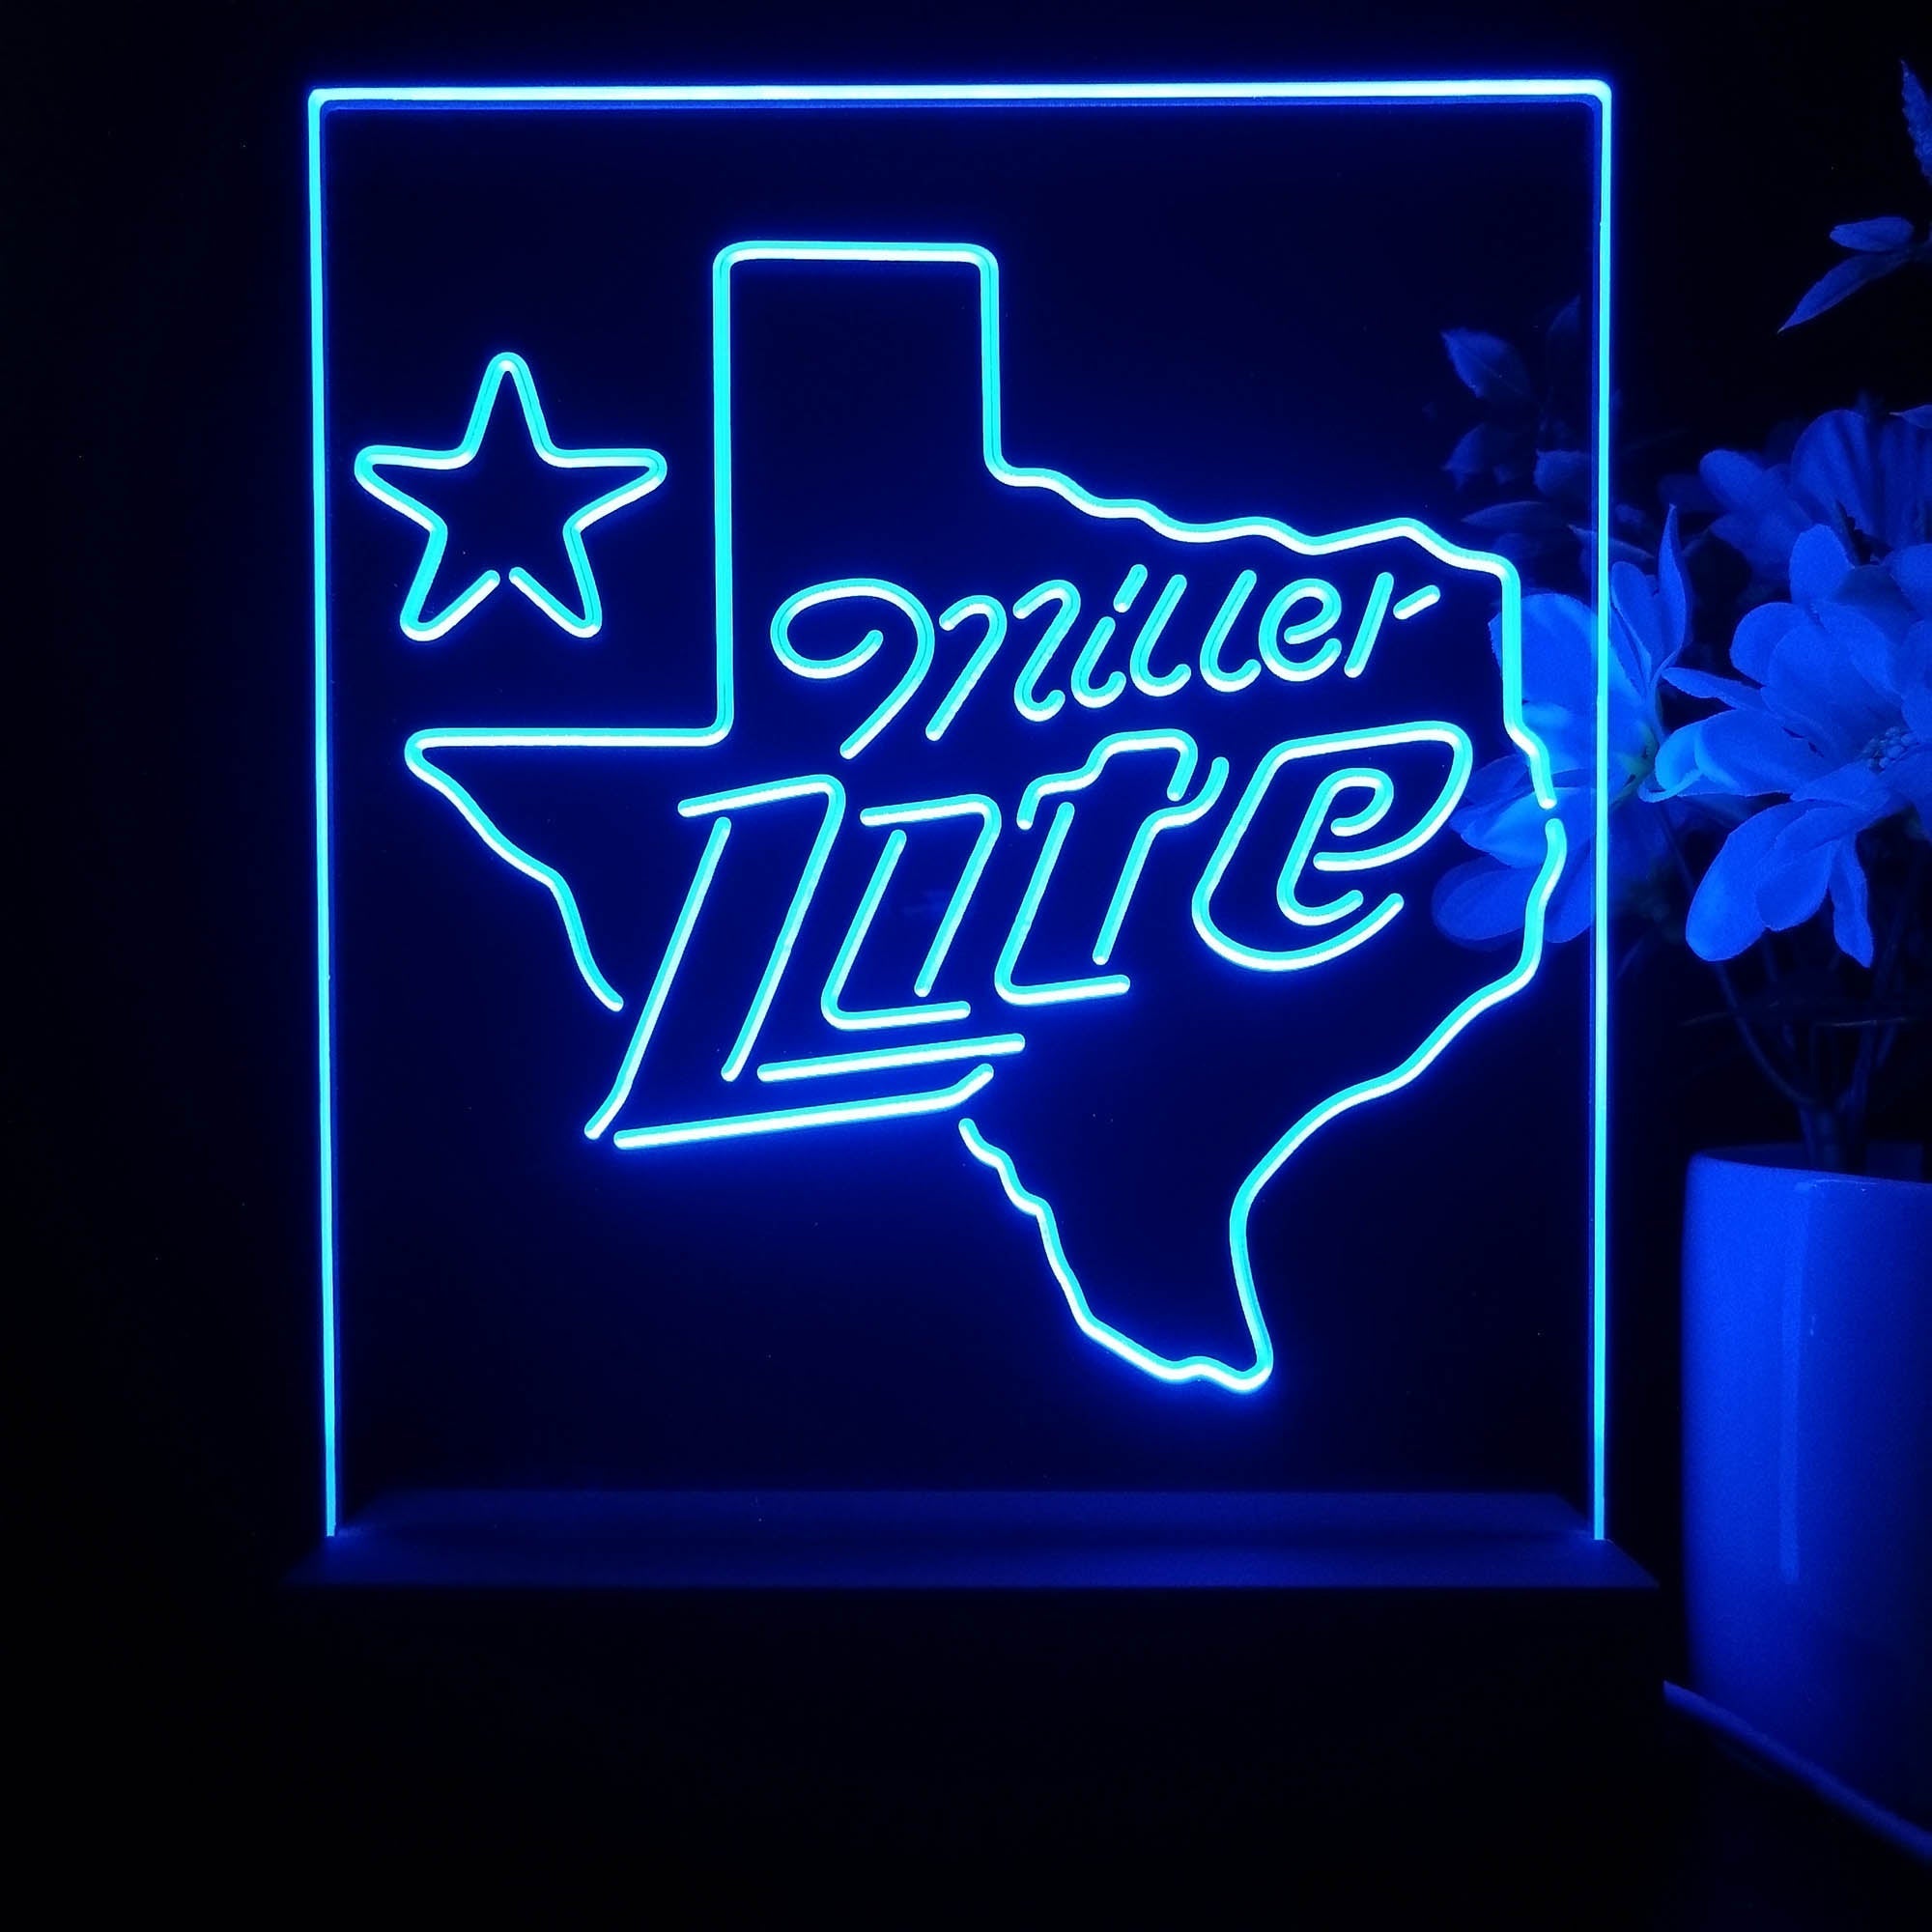 Miller Texas Star Beer 3D Illusion Night Light Desk Lamp